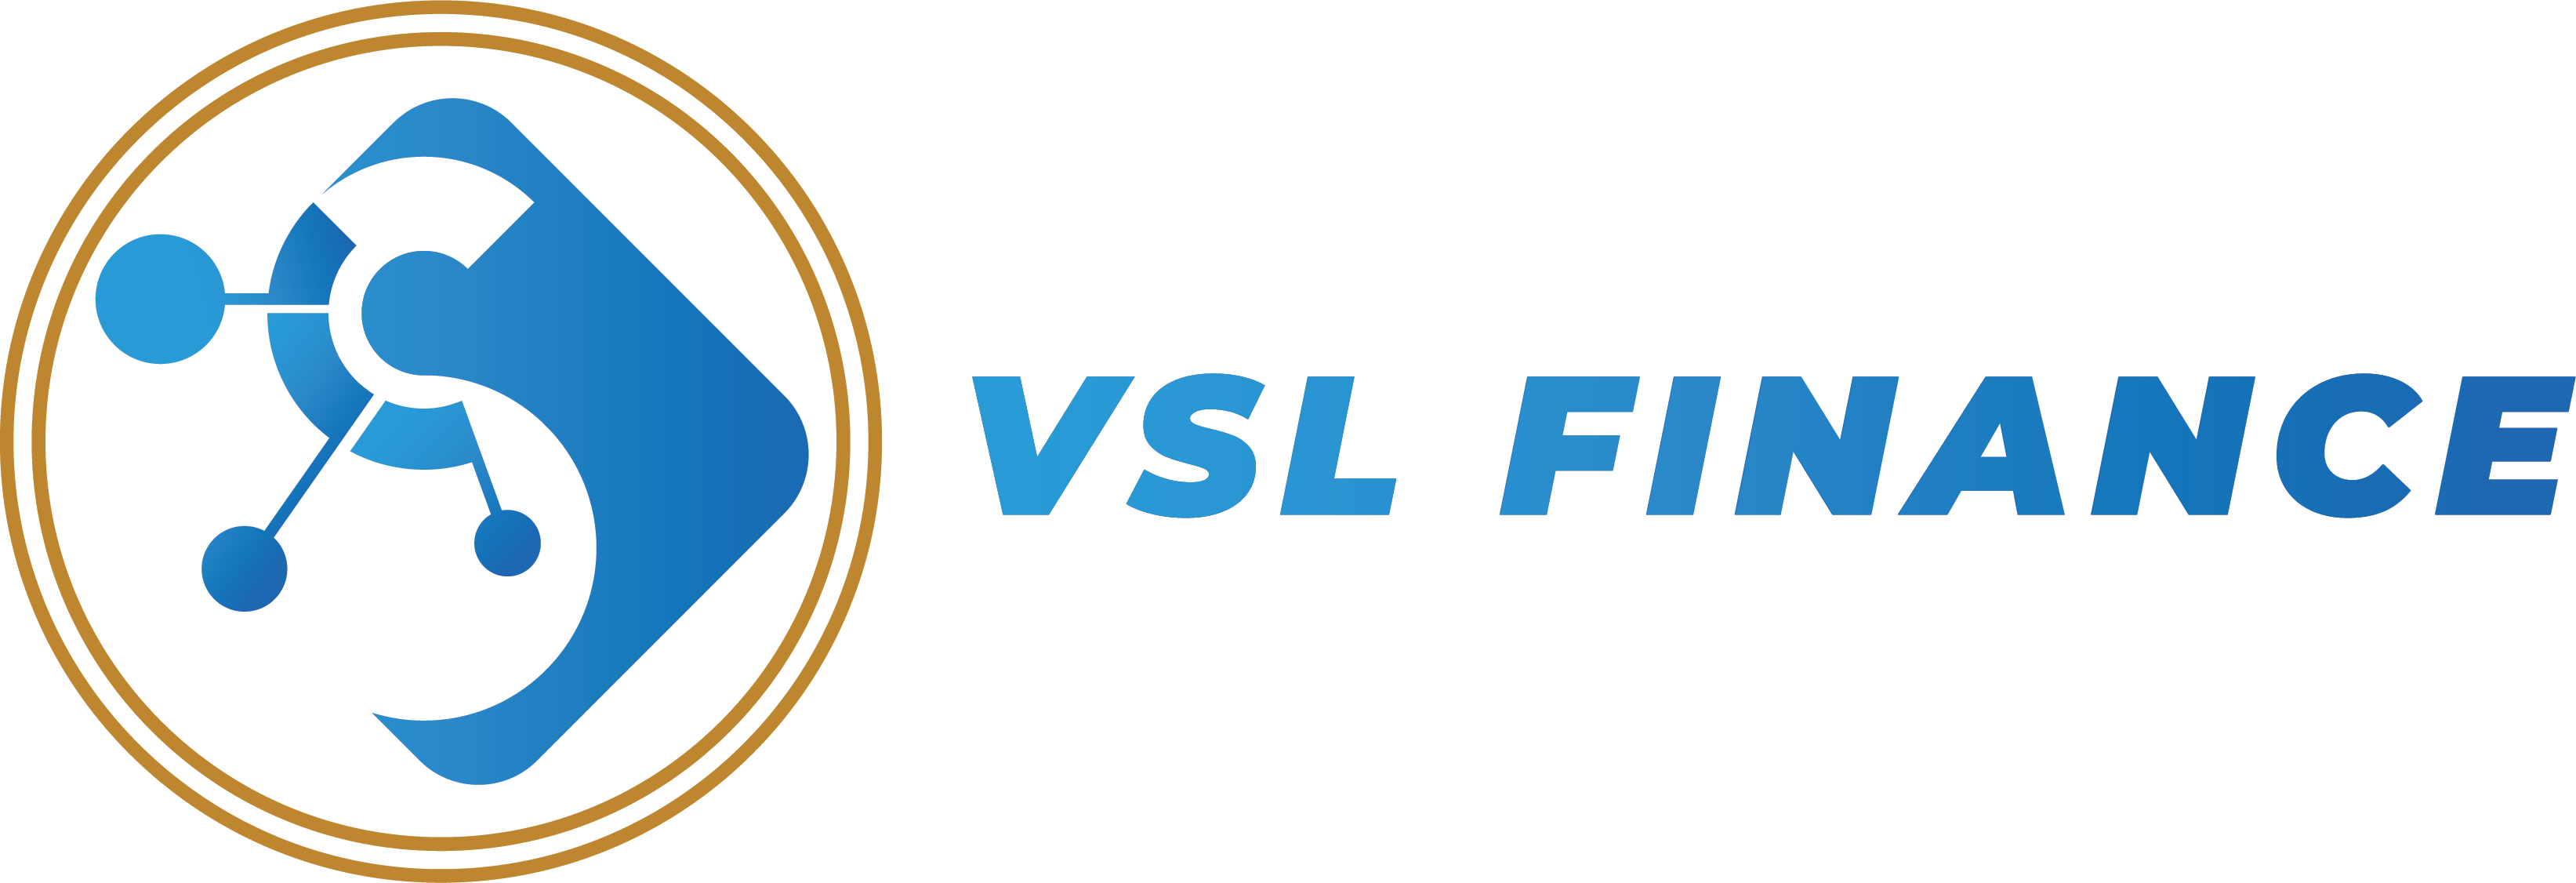 VSL Finance